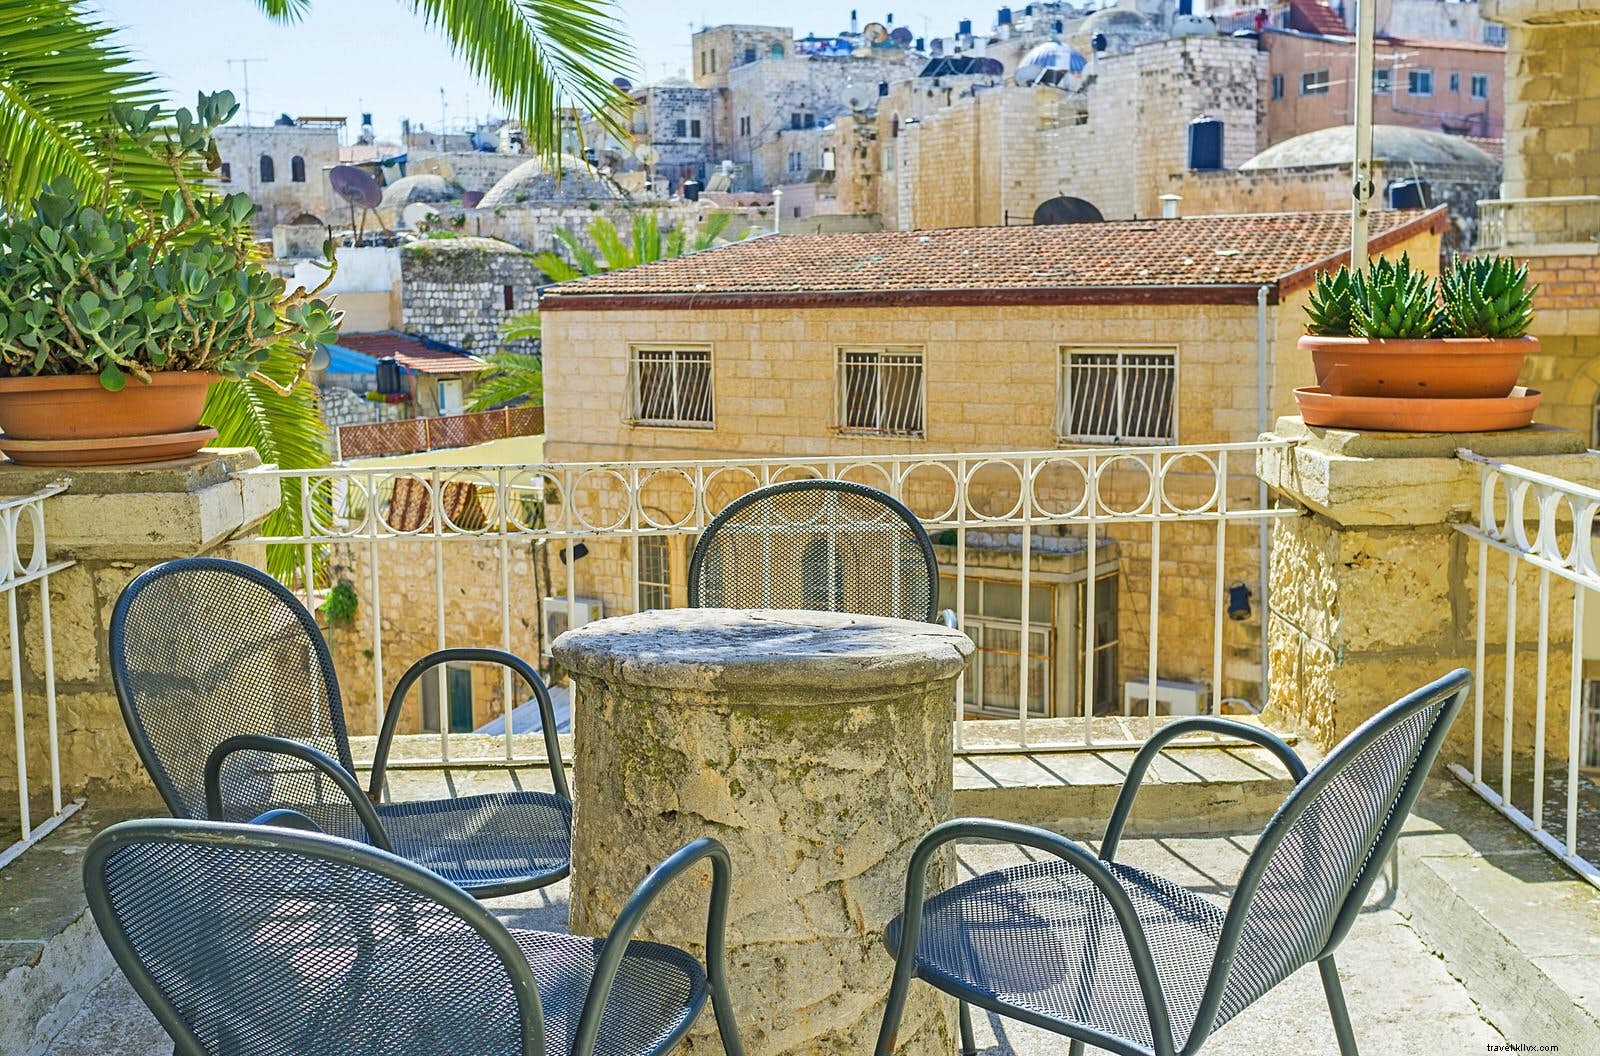 Beristirahatlah:kafe dan bar terbaik di Yerusalem 